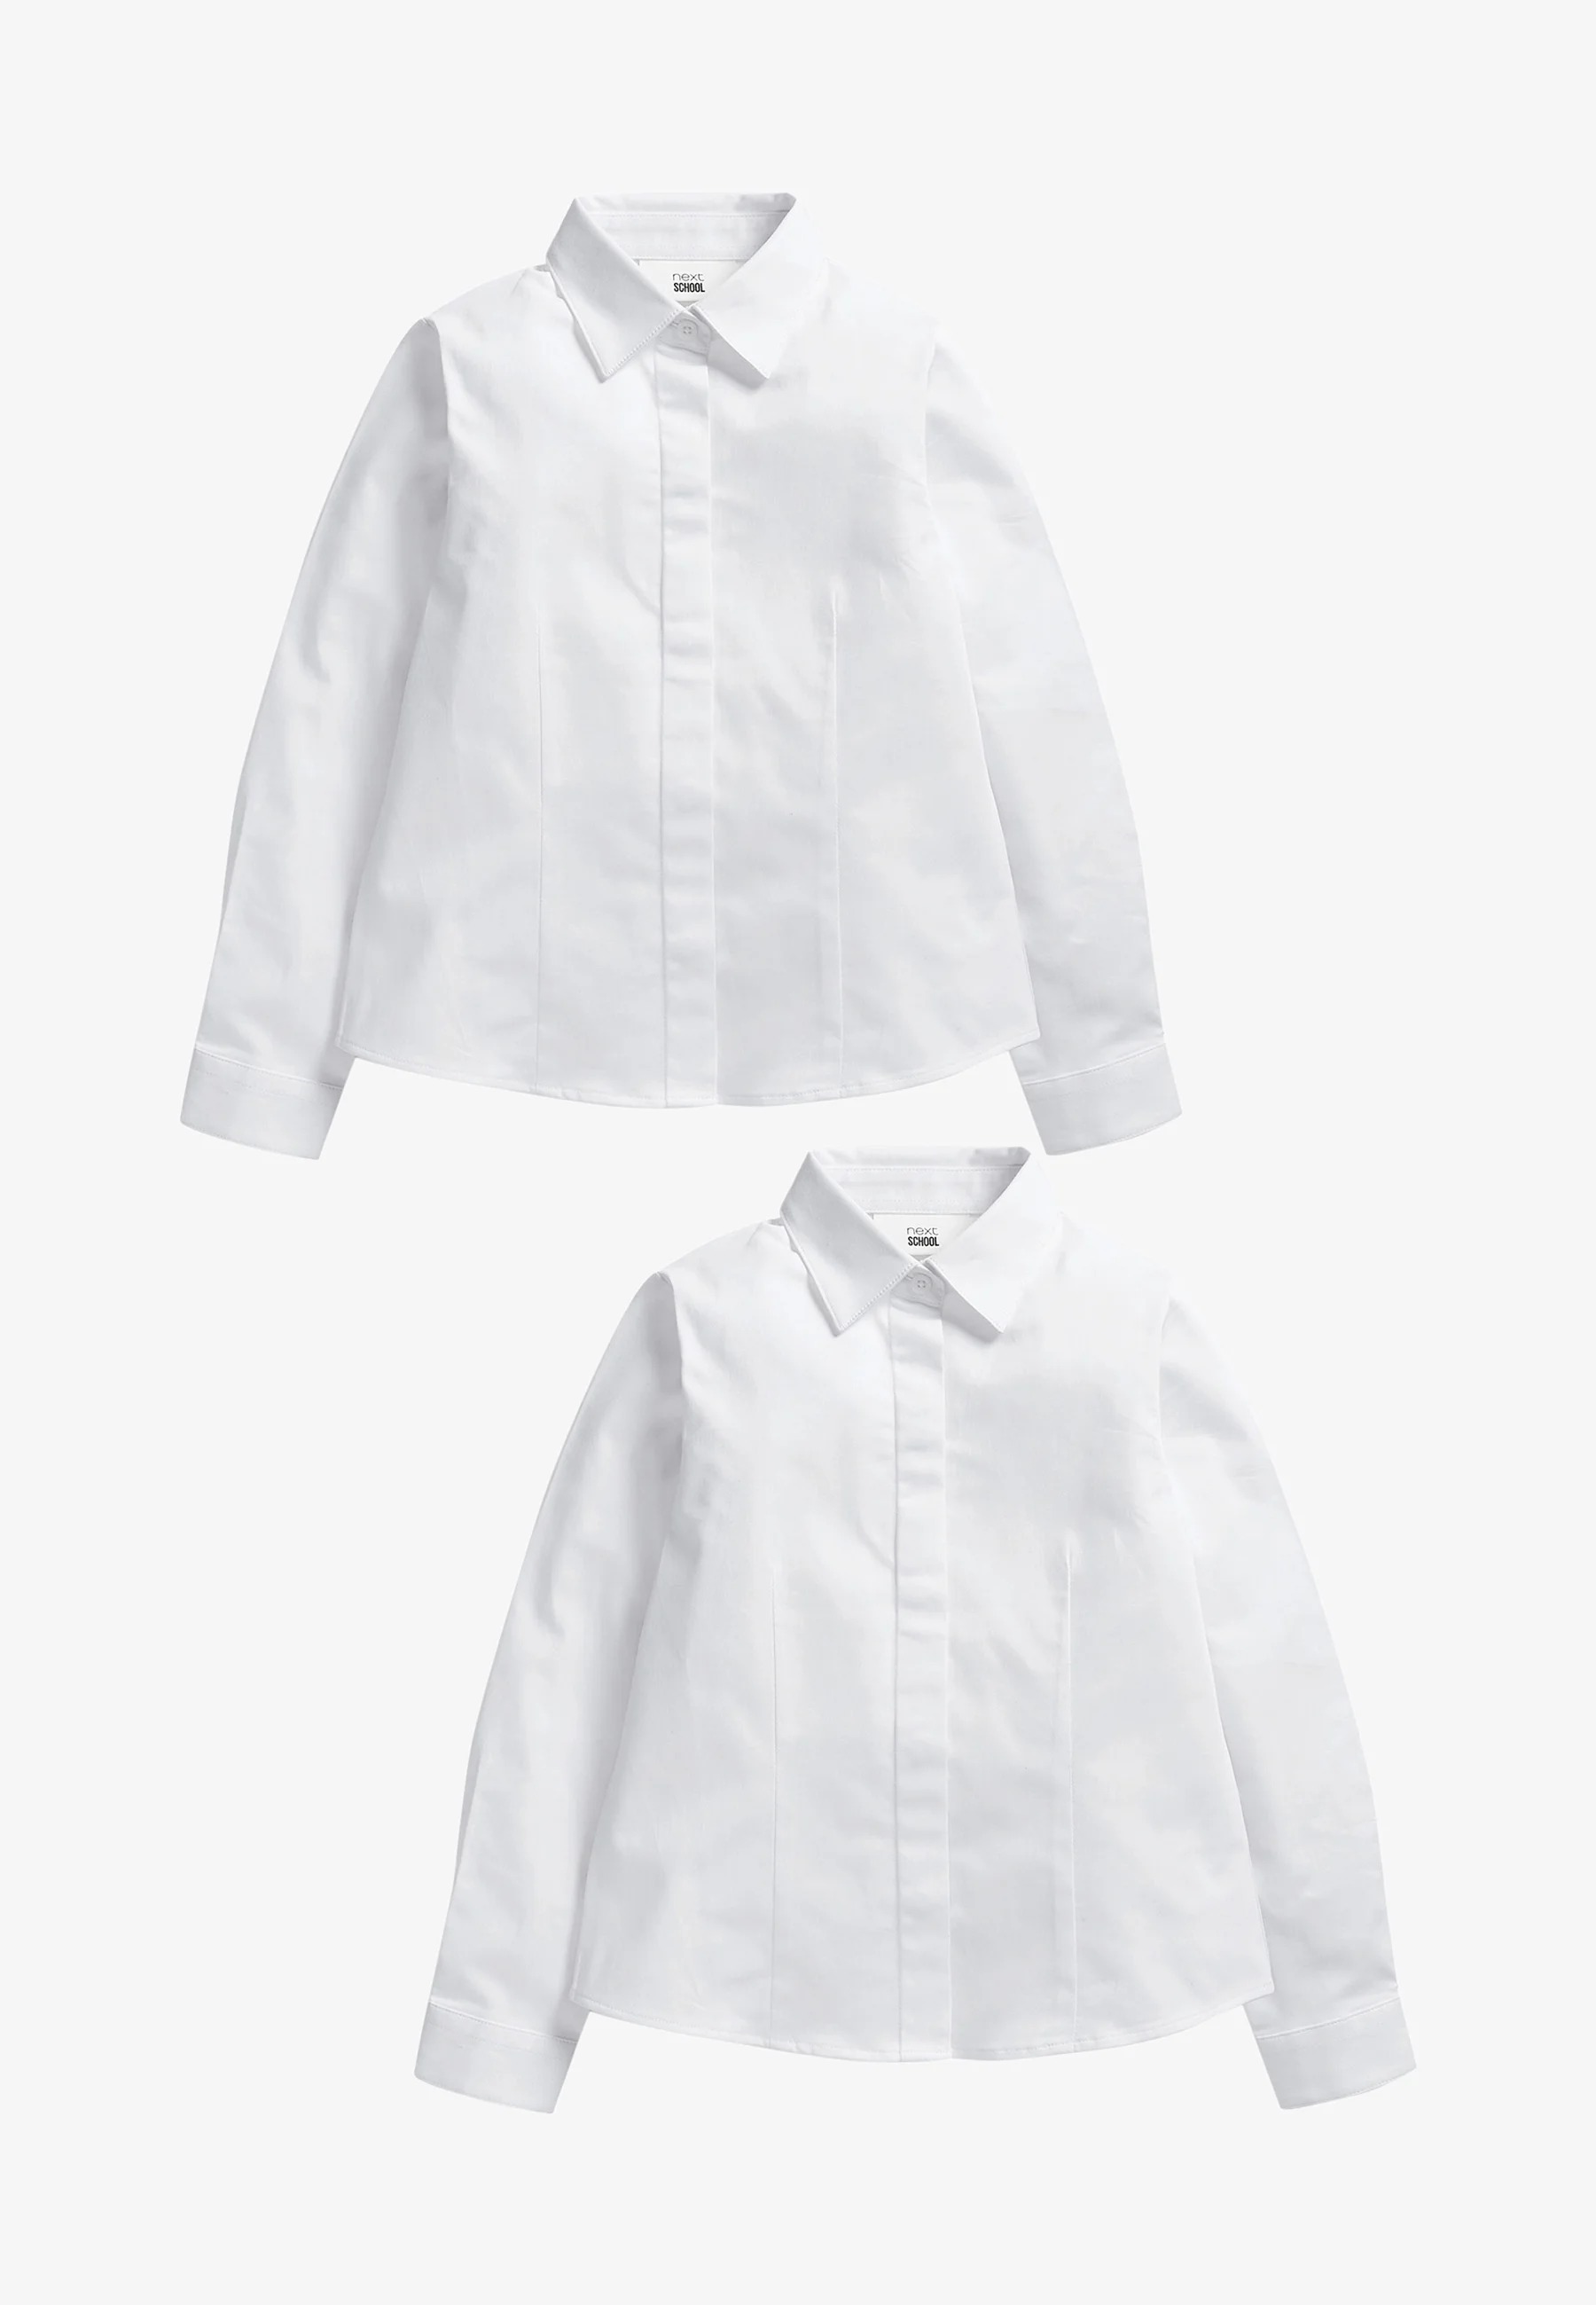 Комплект рубашек для девочки Next, 2 штуки, белый